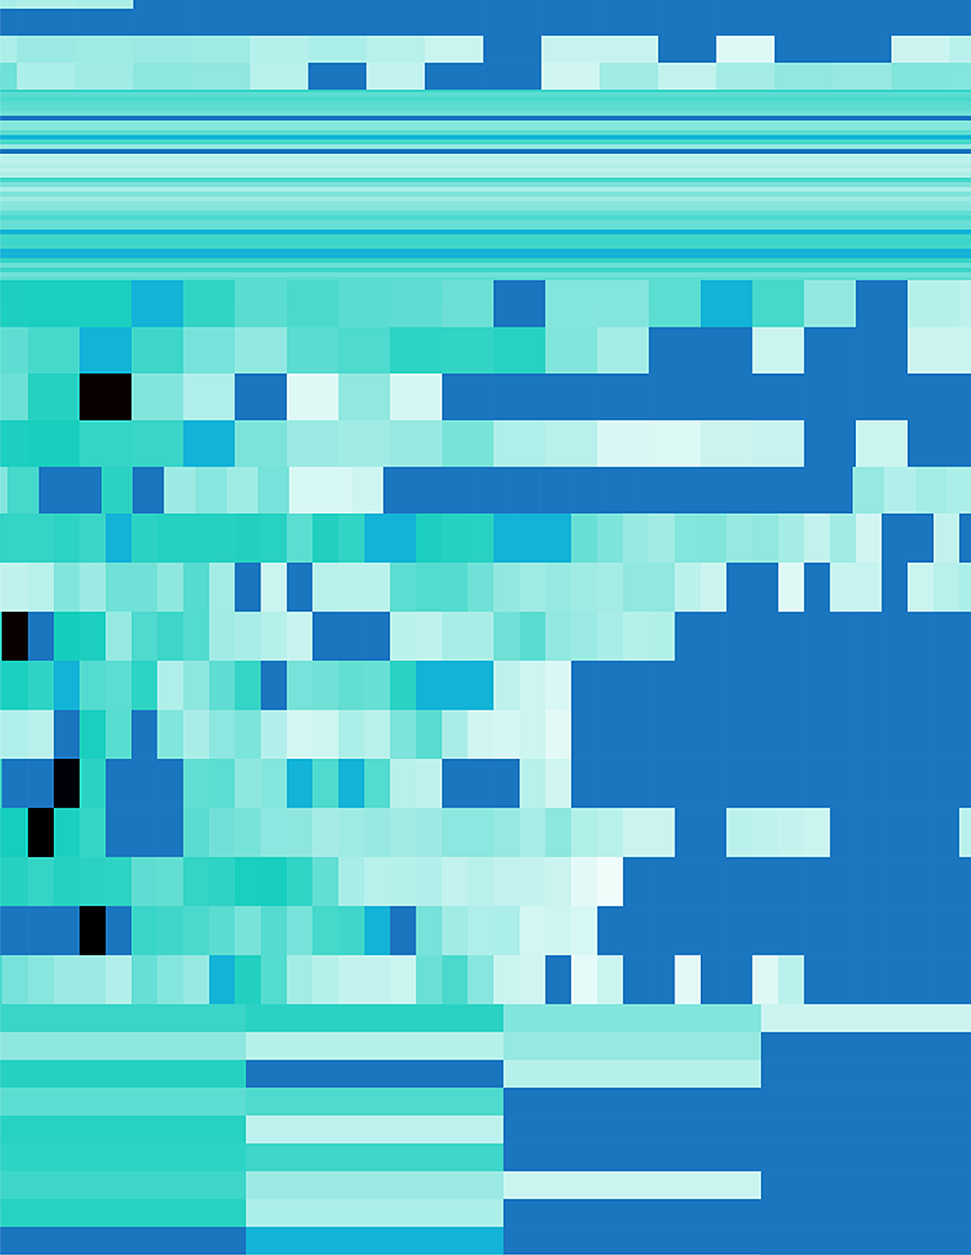 türkise, nebelartige Pixel auf blauem Hintergrund